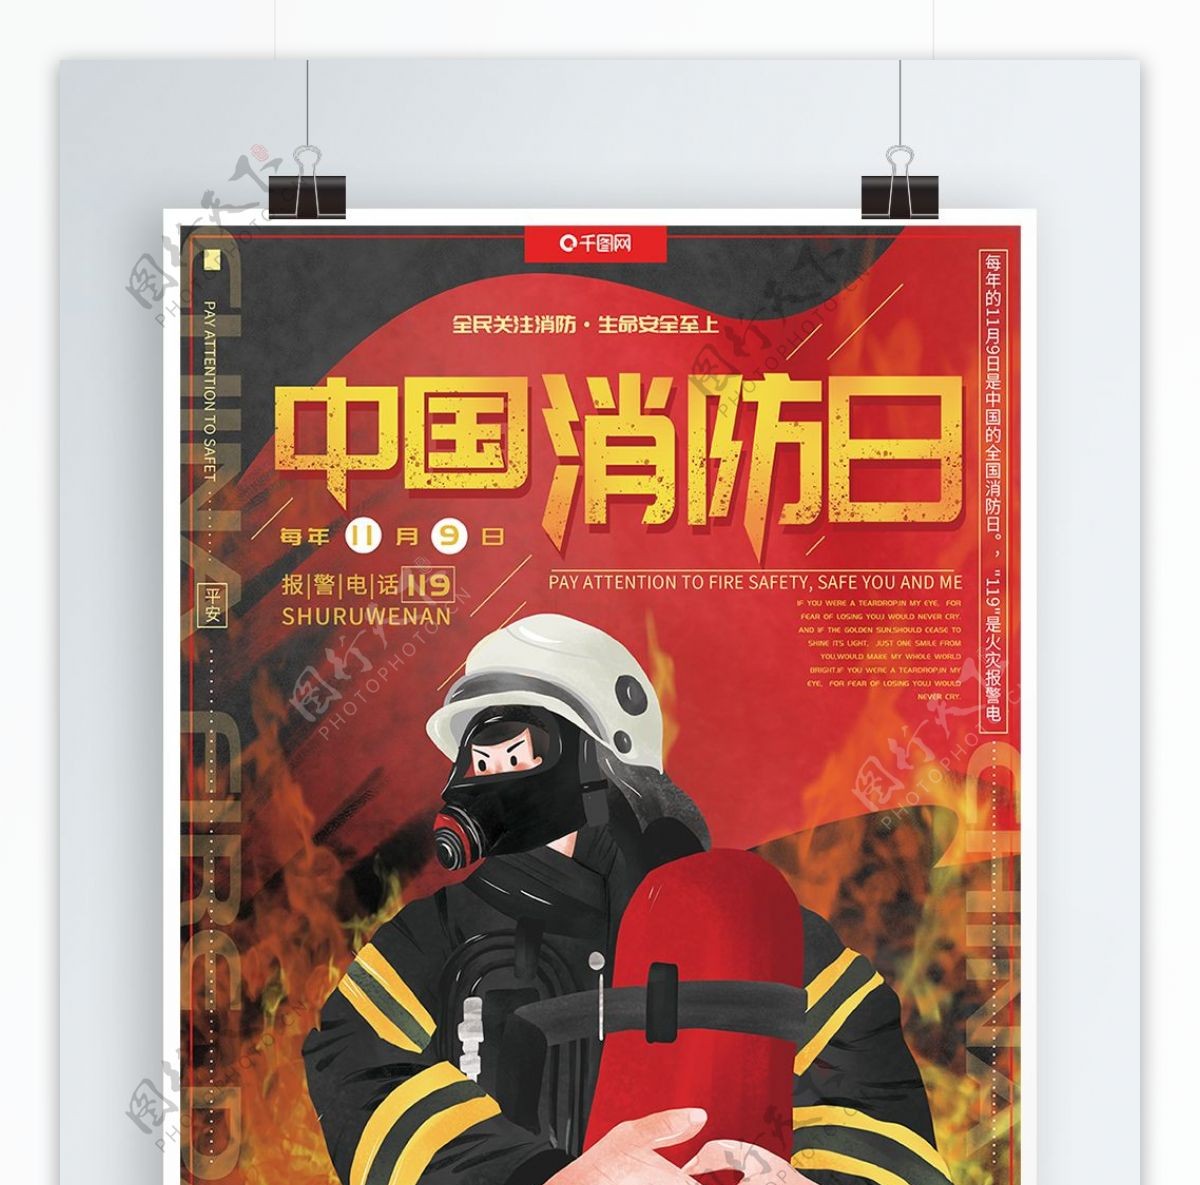 原创手绘人物红色大气中国消防日宣传海报